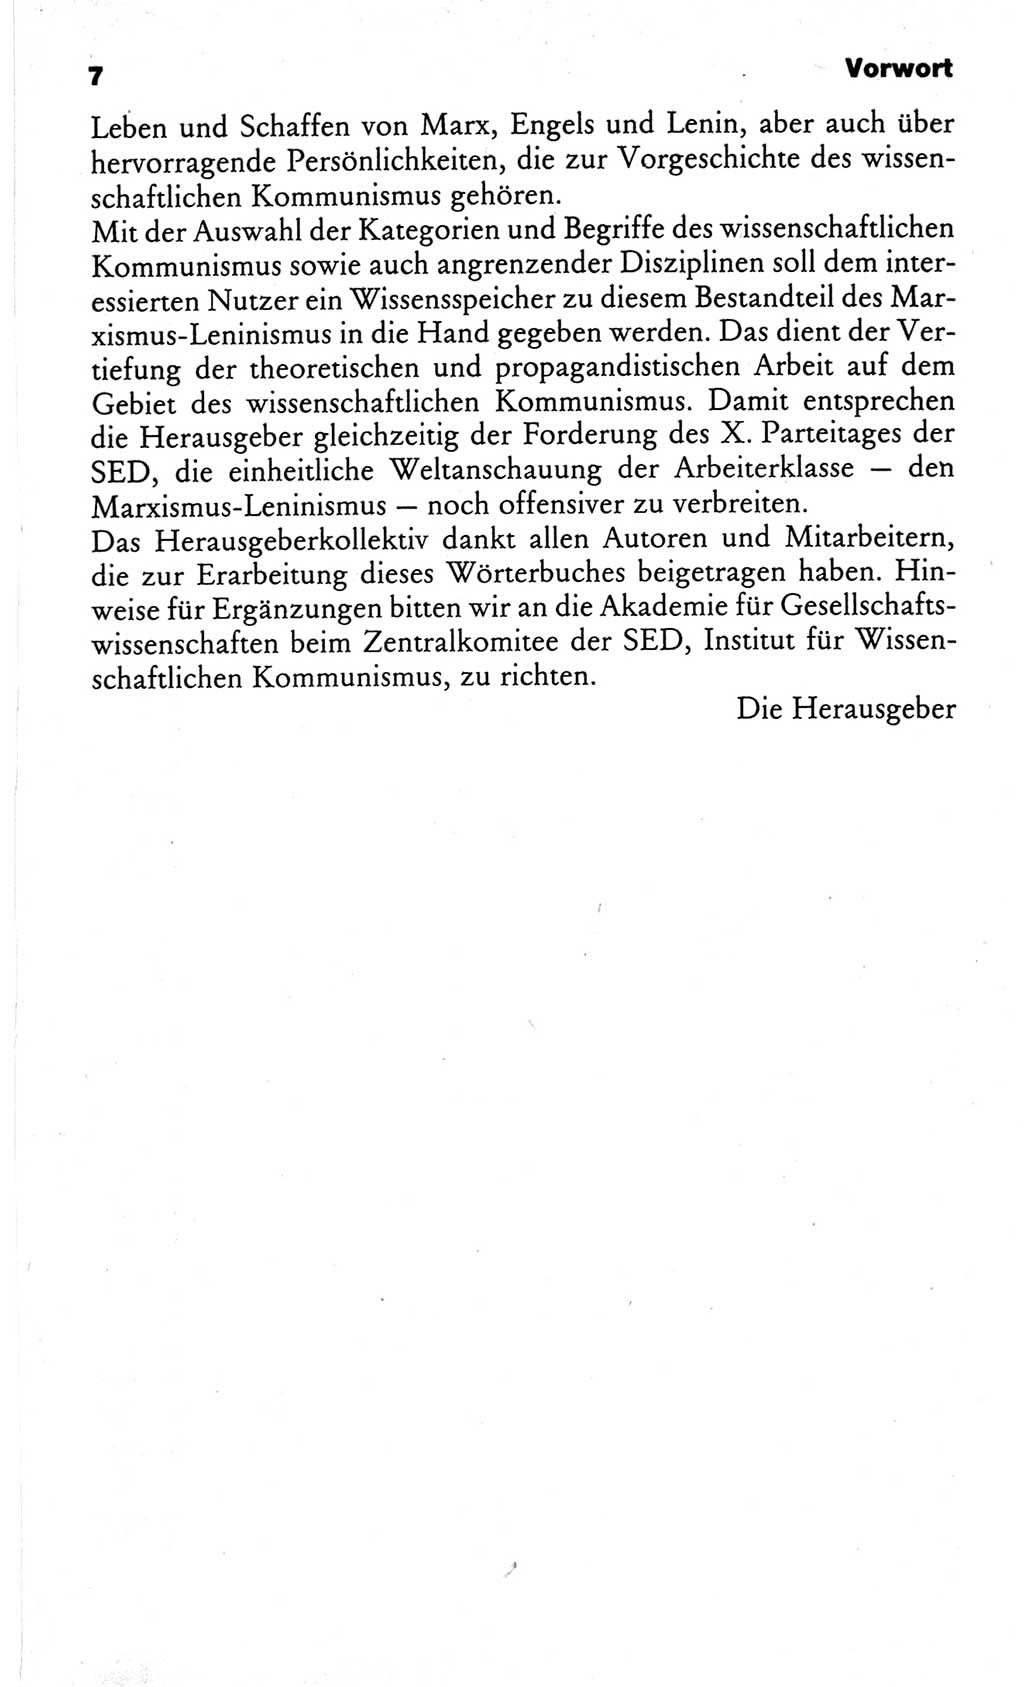 Wörterbuch des wissenschaftlichen Kommunismus [Deutsche Demokratische Republik (DDR)] 1982, Seite 7 (Wb. wiss. Komm. DDR 1982, S. 7)